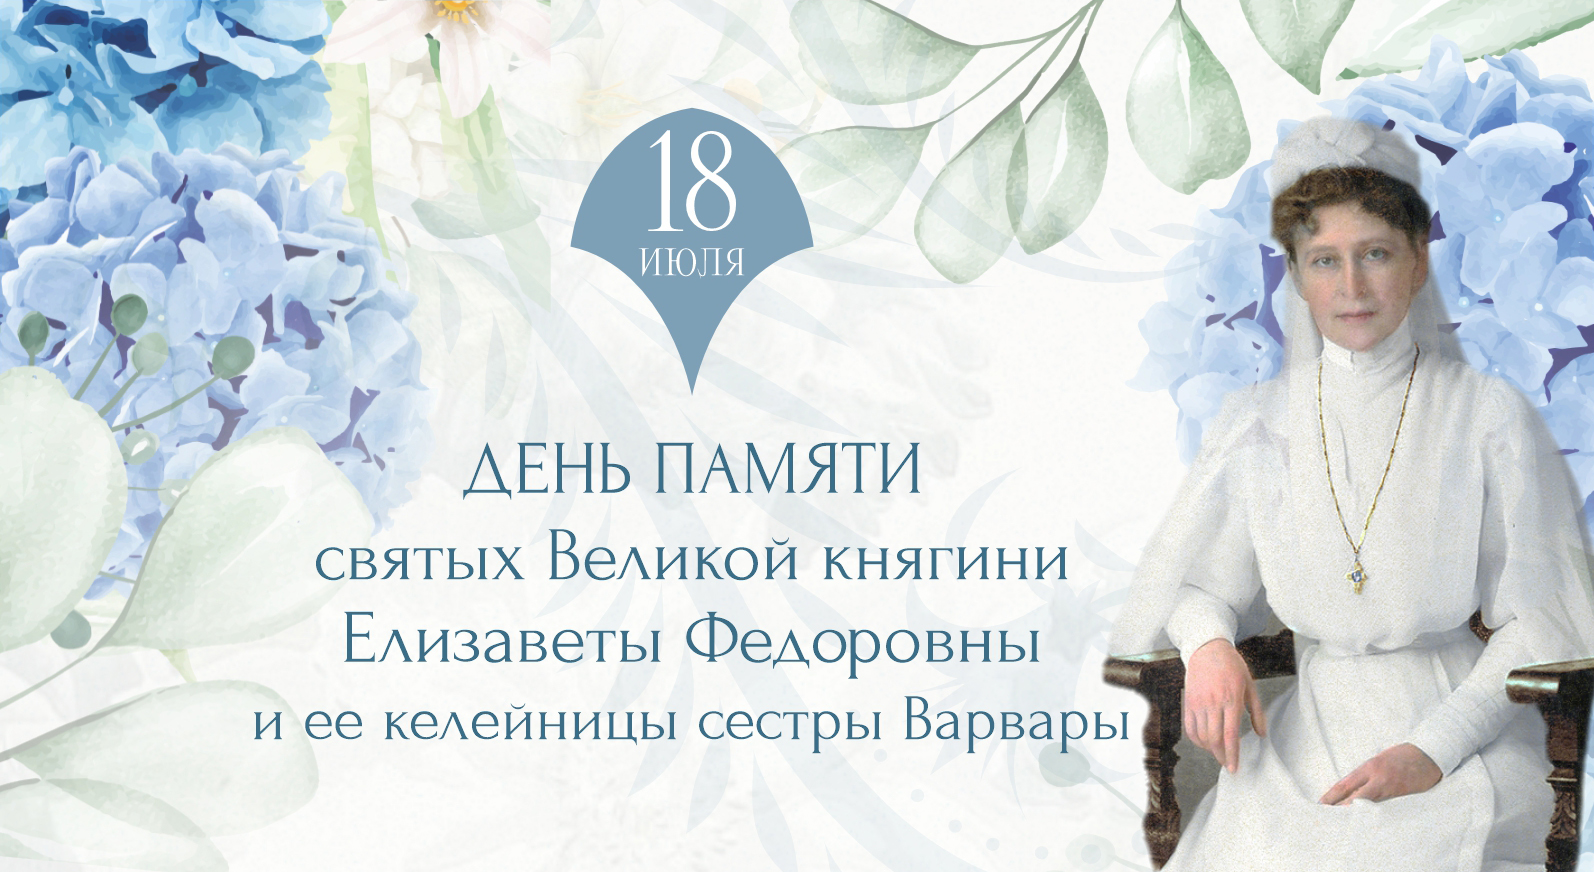 В Марфо-Мариинской обители пройдут праздничные мероприятия в день памяти Великой княгини Елизаветы Федоровны